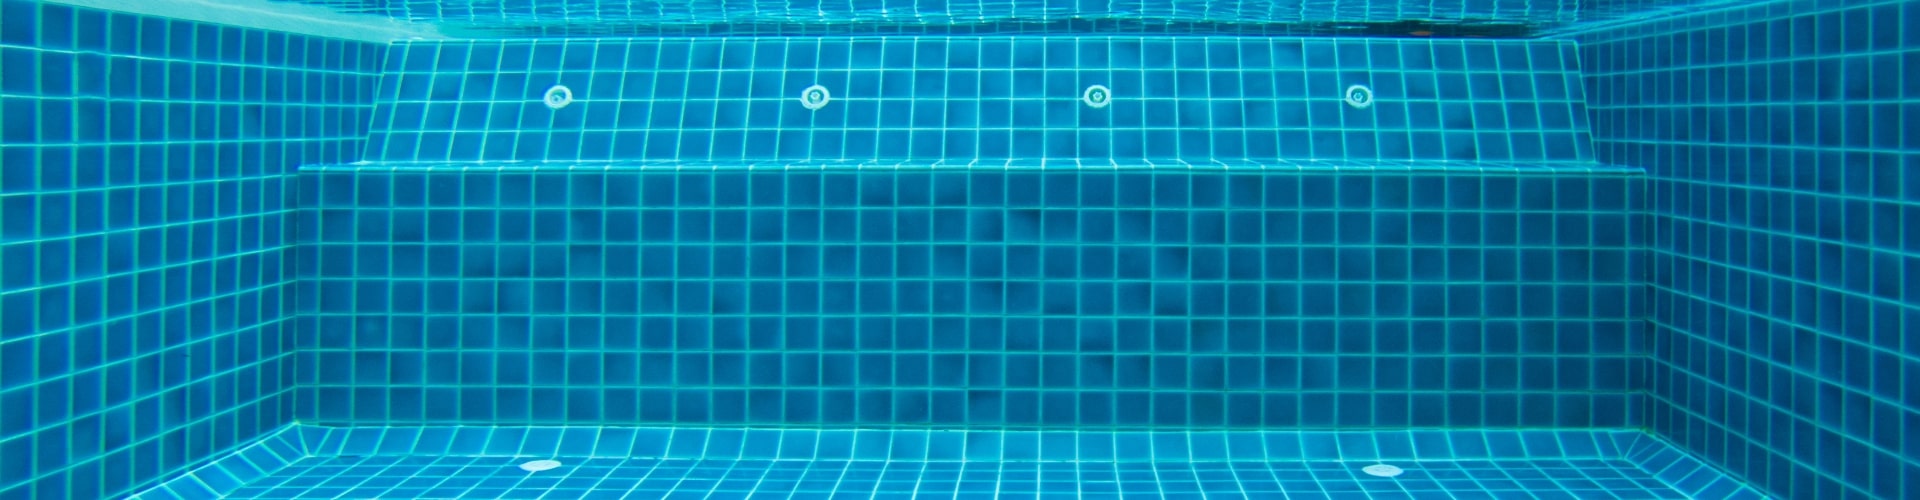 ระบบกรองน้ำสระว่ายน้ำ ถังกรองระบบต่าง ๆ และวิธีการเลือกใช้ระบบ